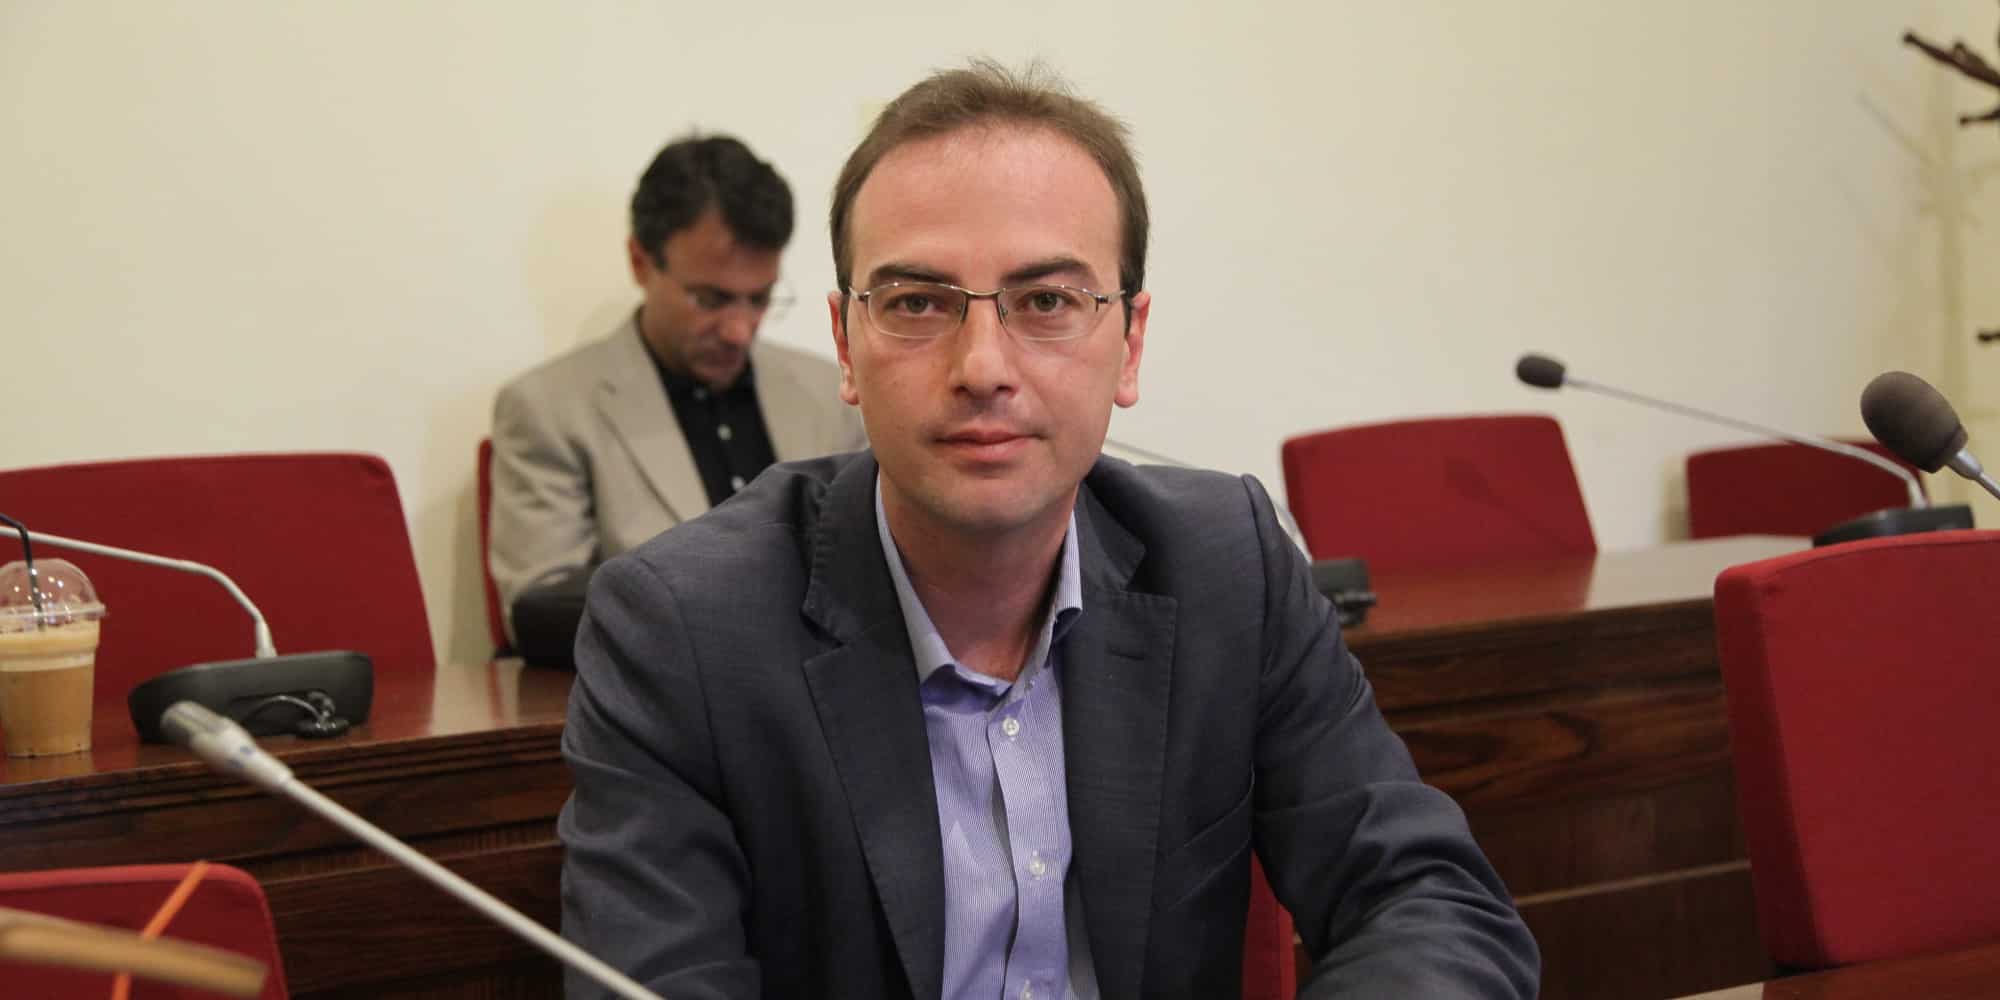 Ο πρώην βουλευτής και μέλος Κεντρικής Επιτροπής ΣΥΡΙΖΑ, Βασίλης Τσίρκας